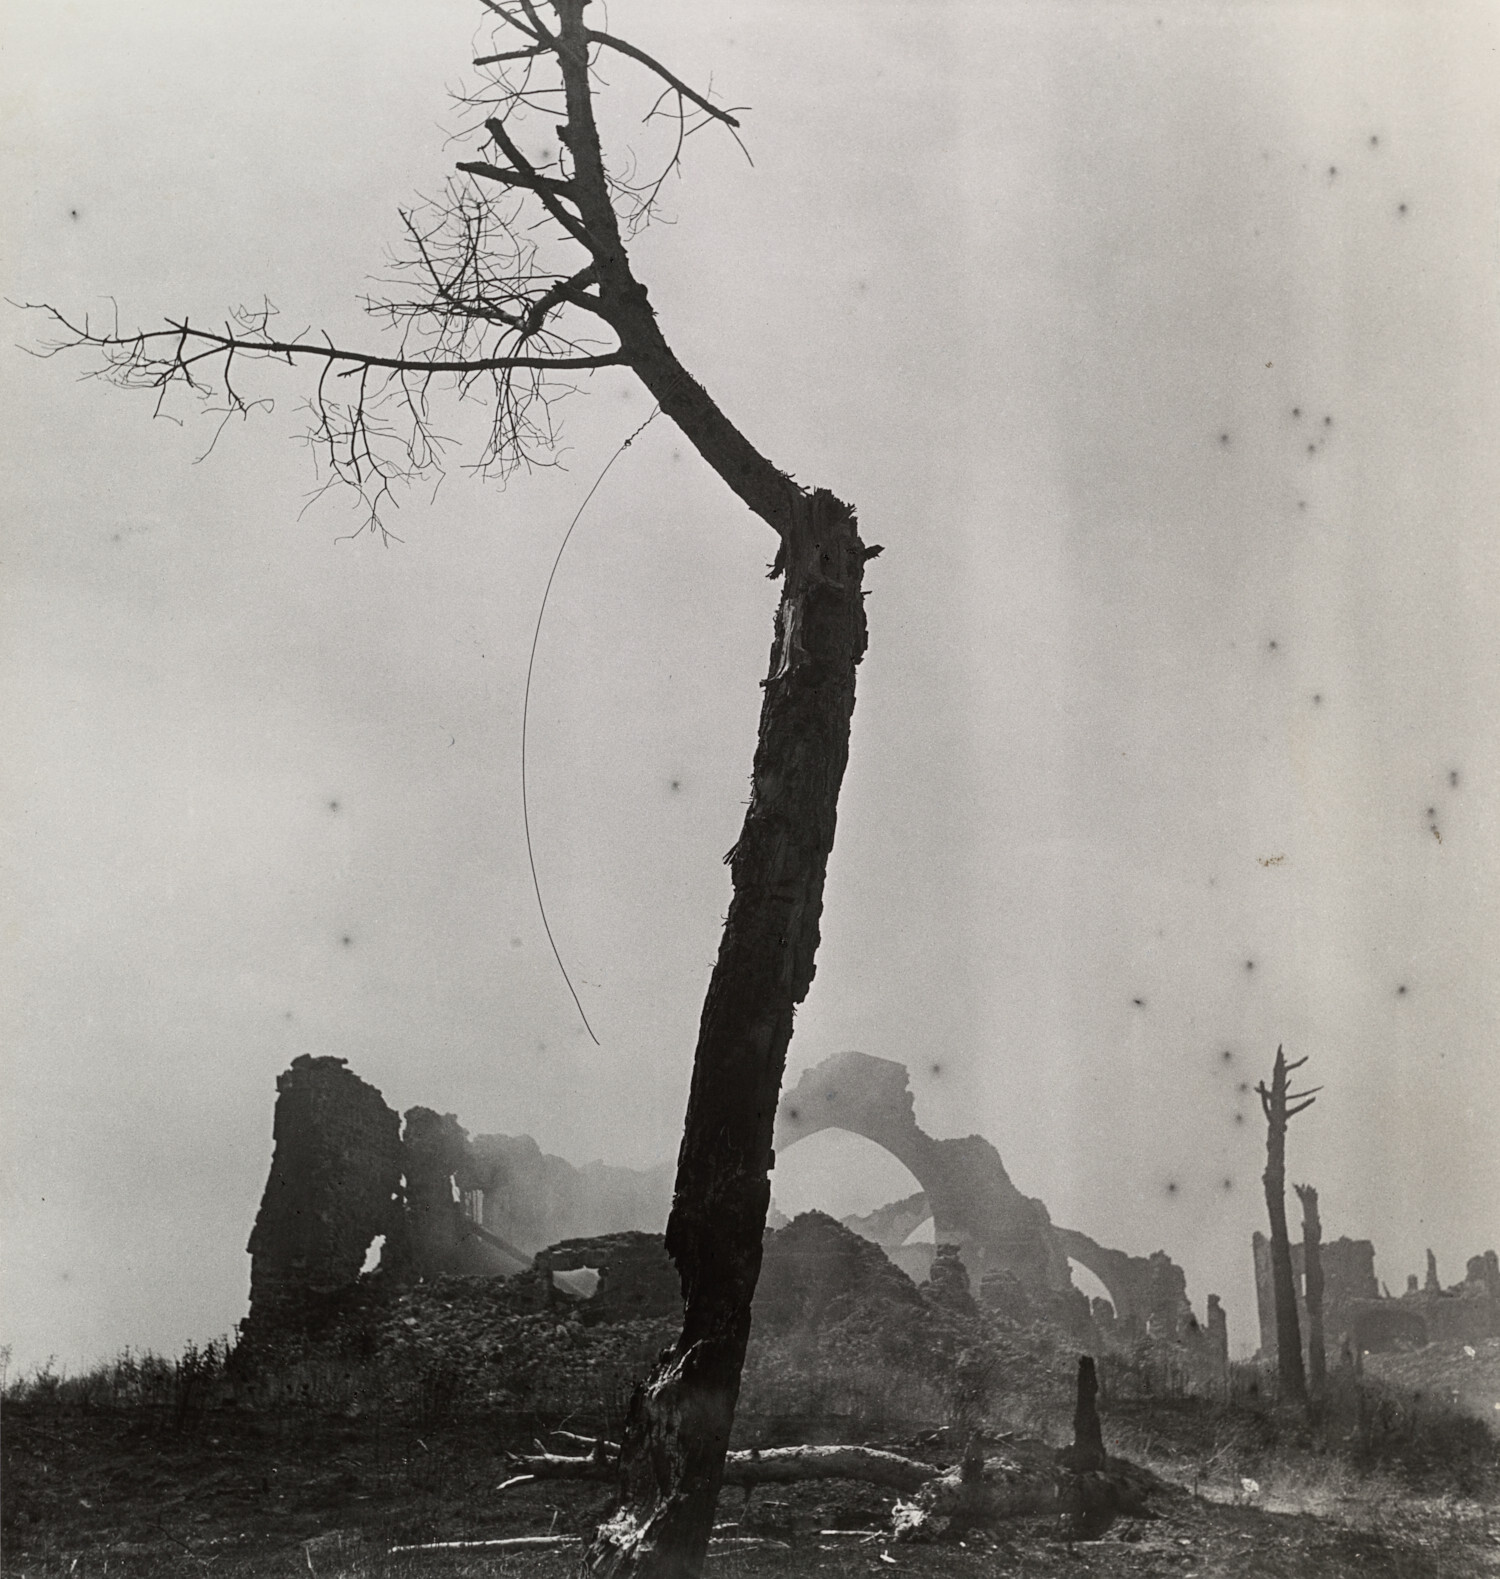 Плацдарм Анцио, год после битвы, Италия, 1945 г. Фотограф Ирвин Пенн